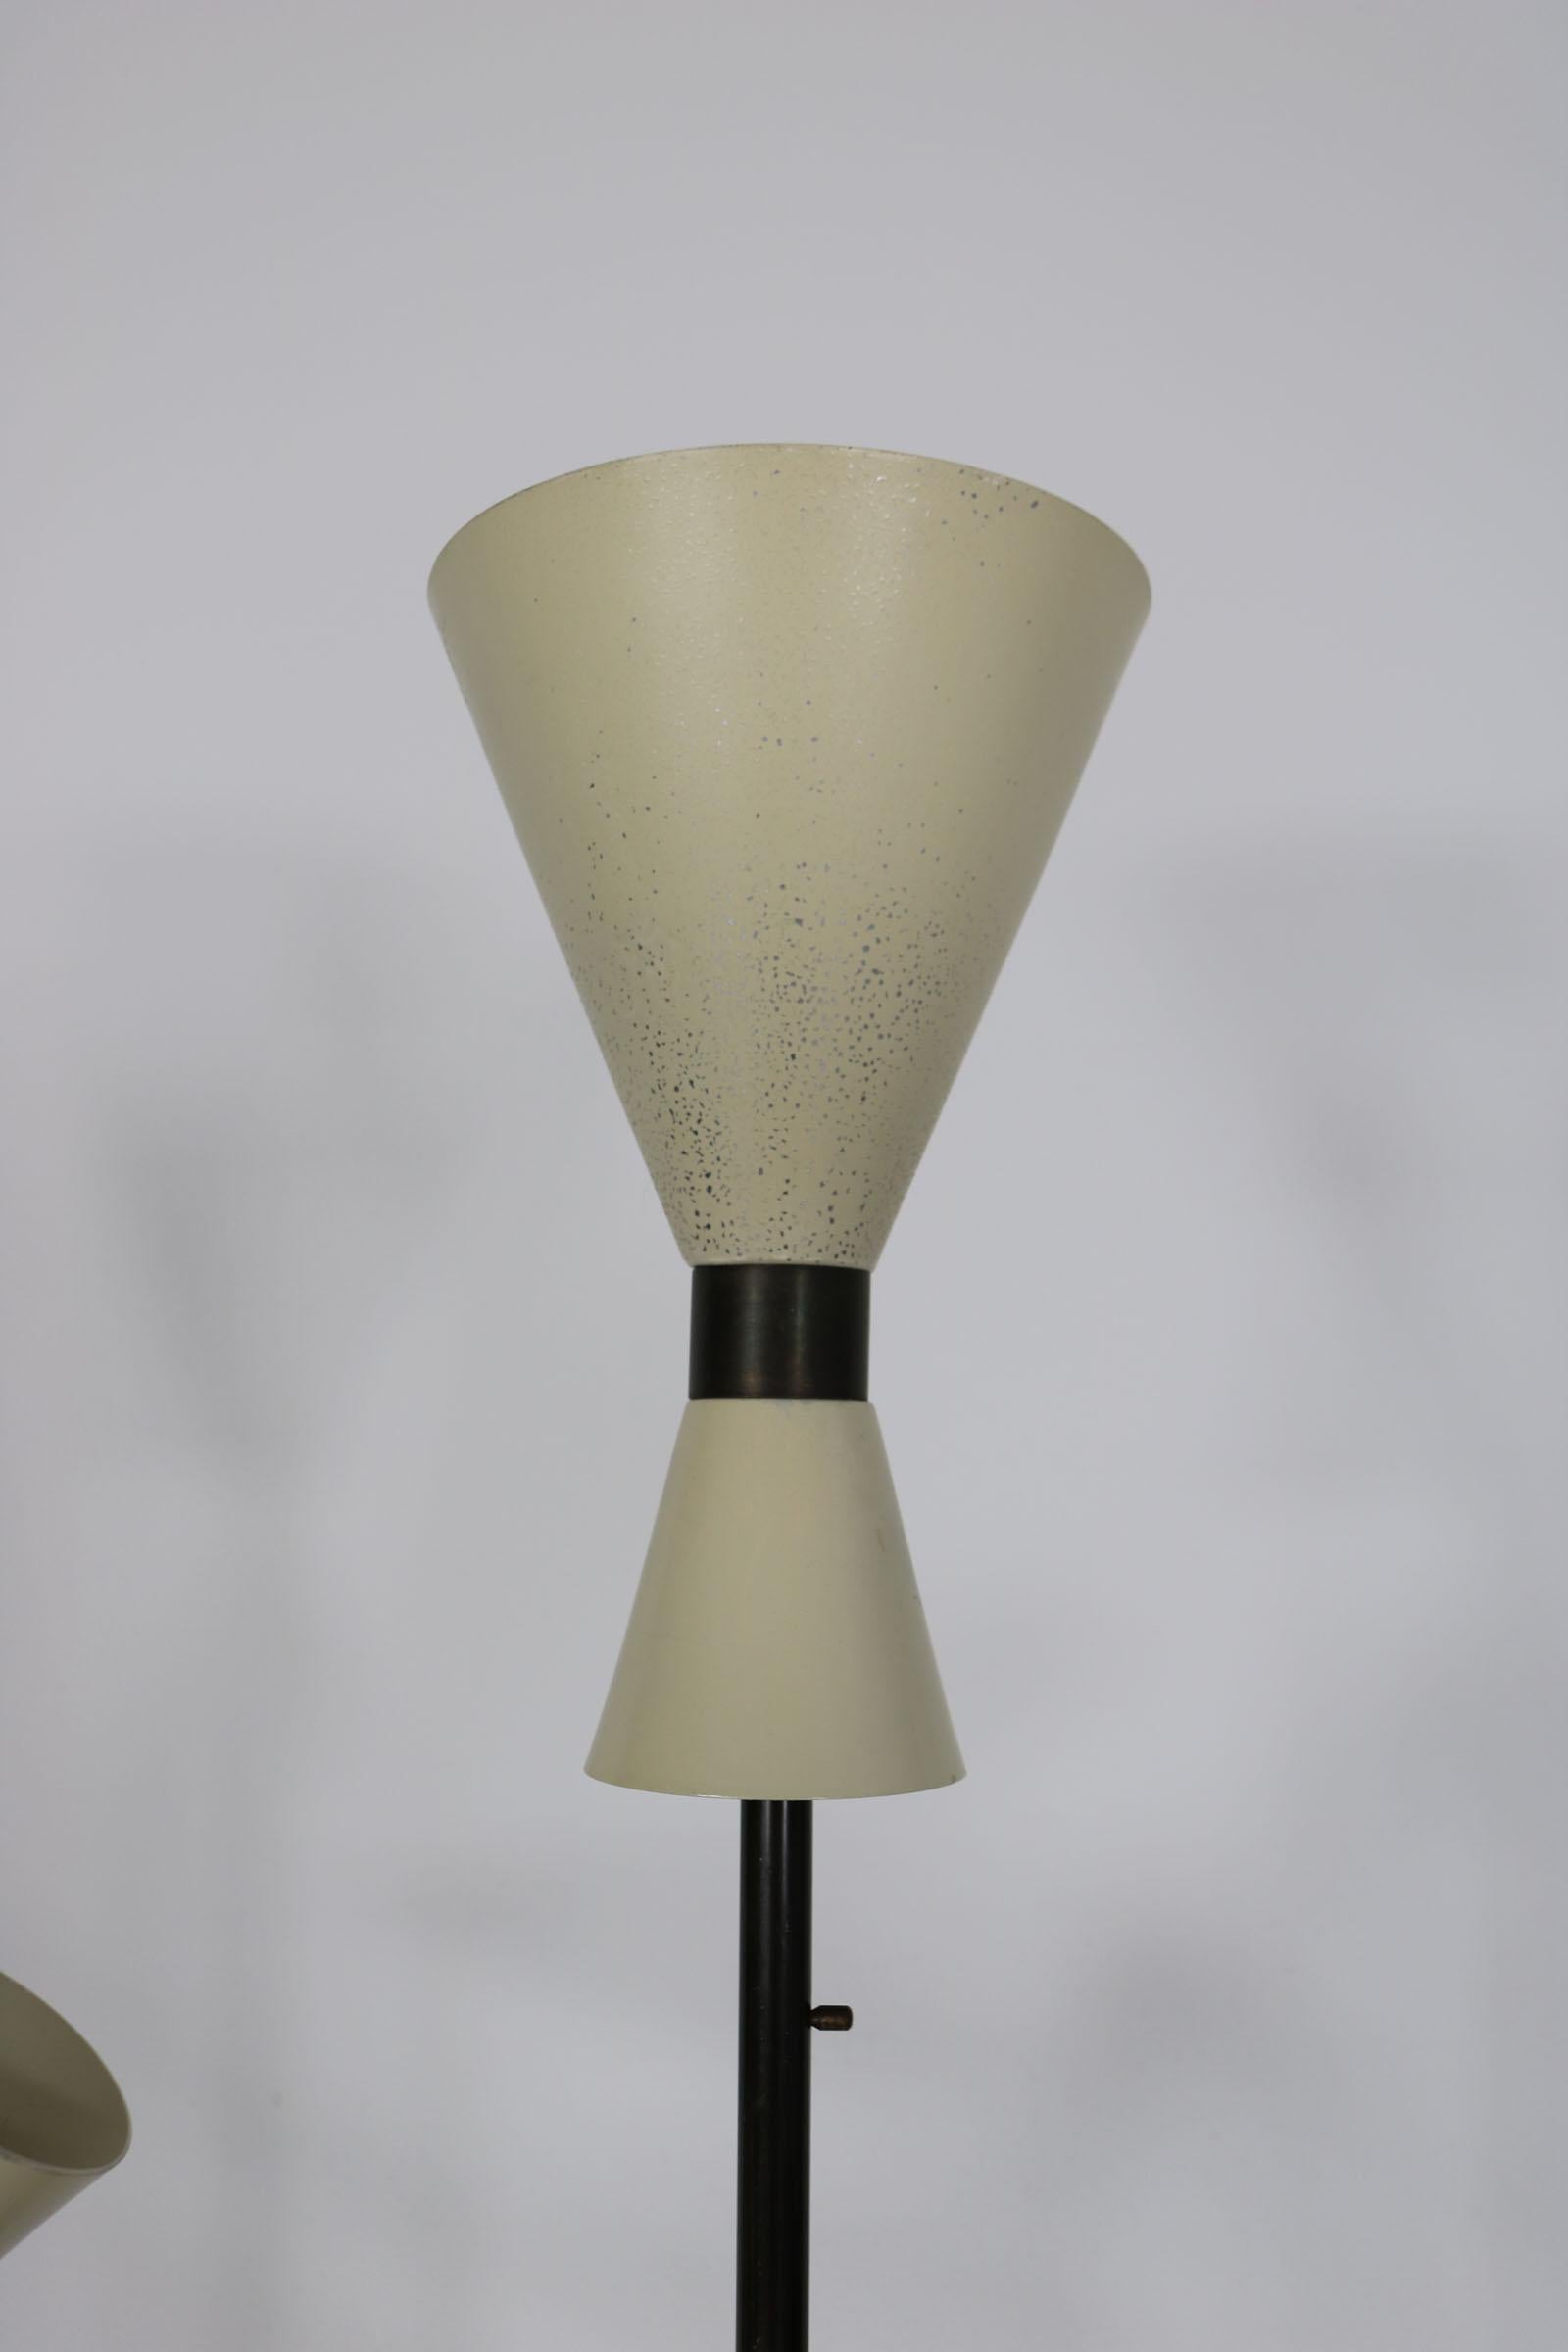  Floor Lamp - Design by J.T. Kalmar, manufactured by Kalmar, Vienna, 1950s.  7